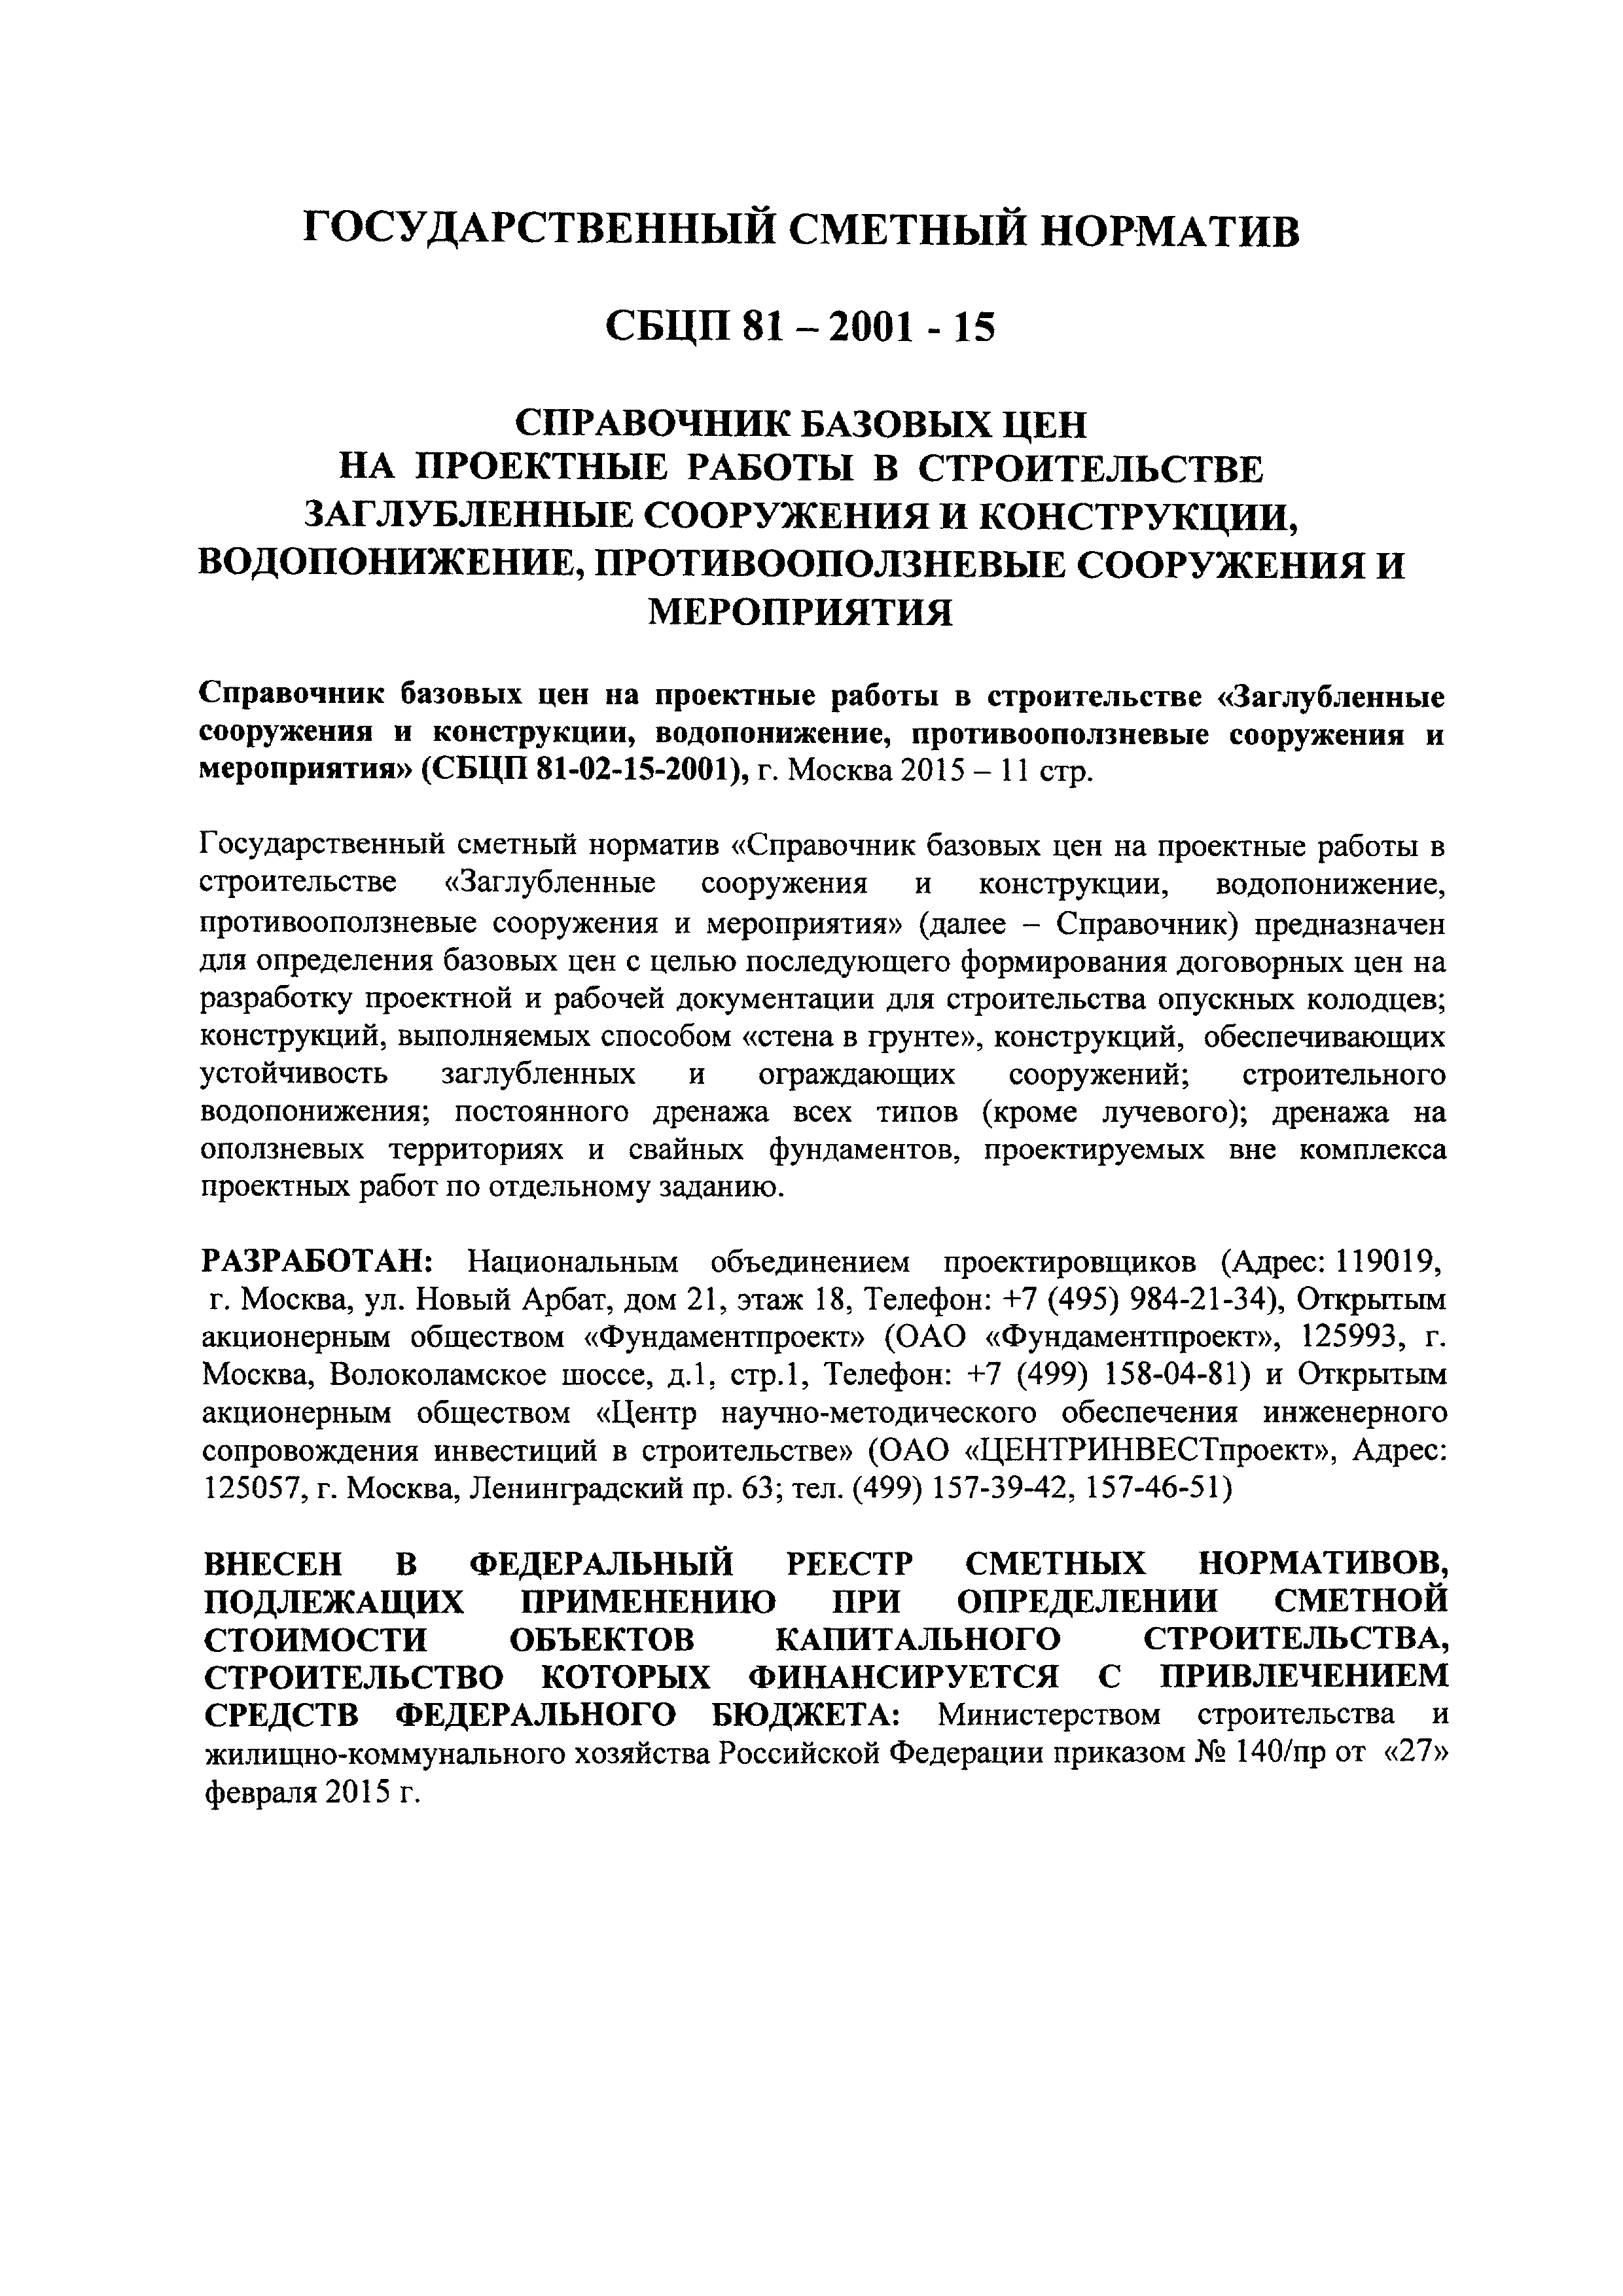 СБЦП 81-2001-15